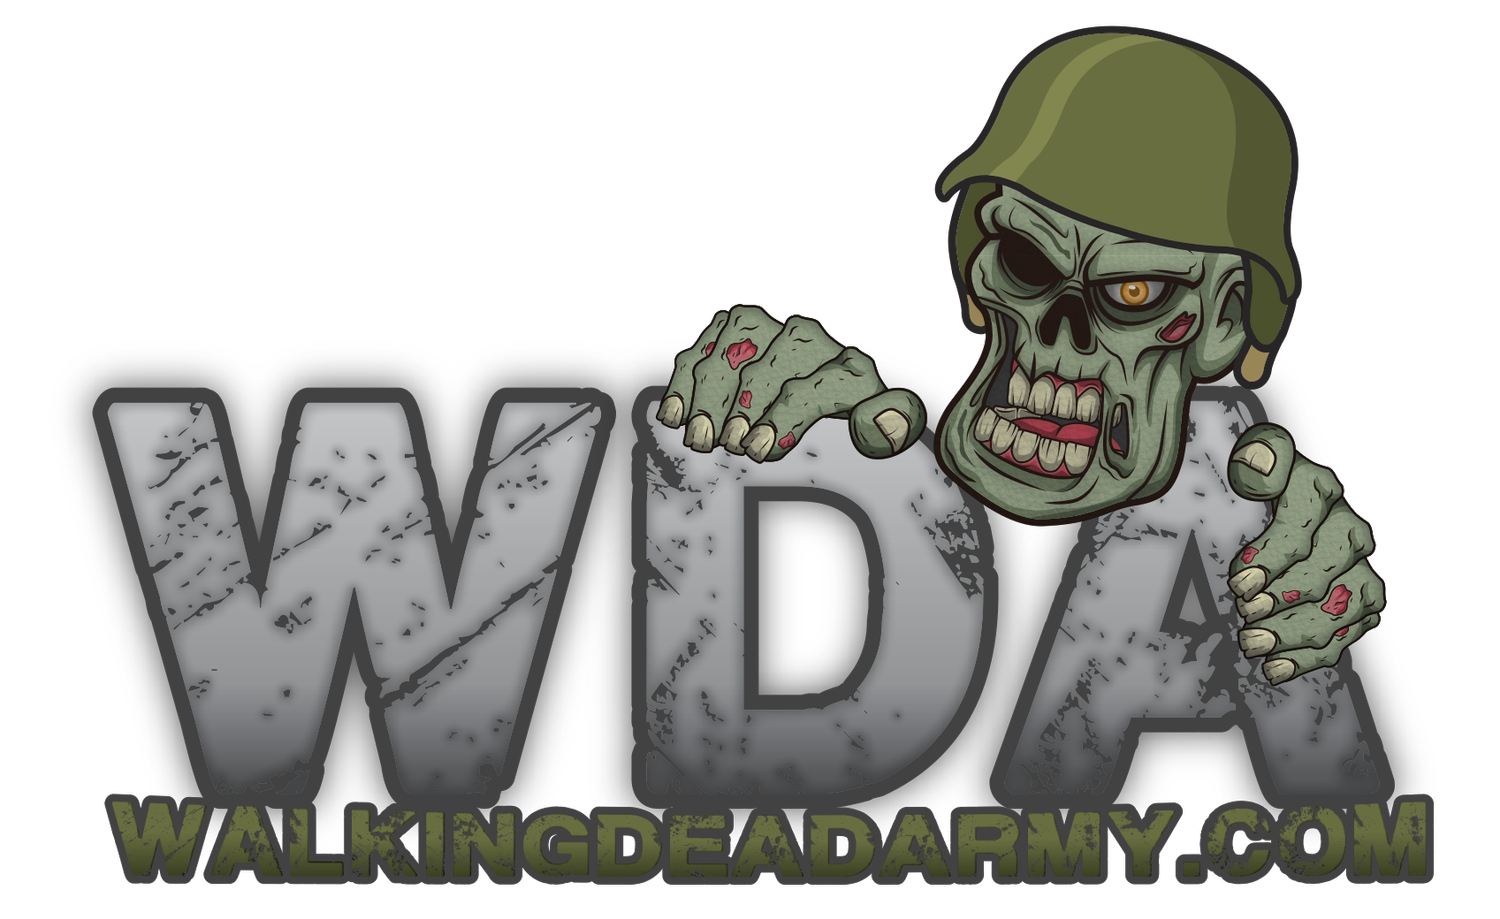 Walking Dead Army